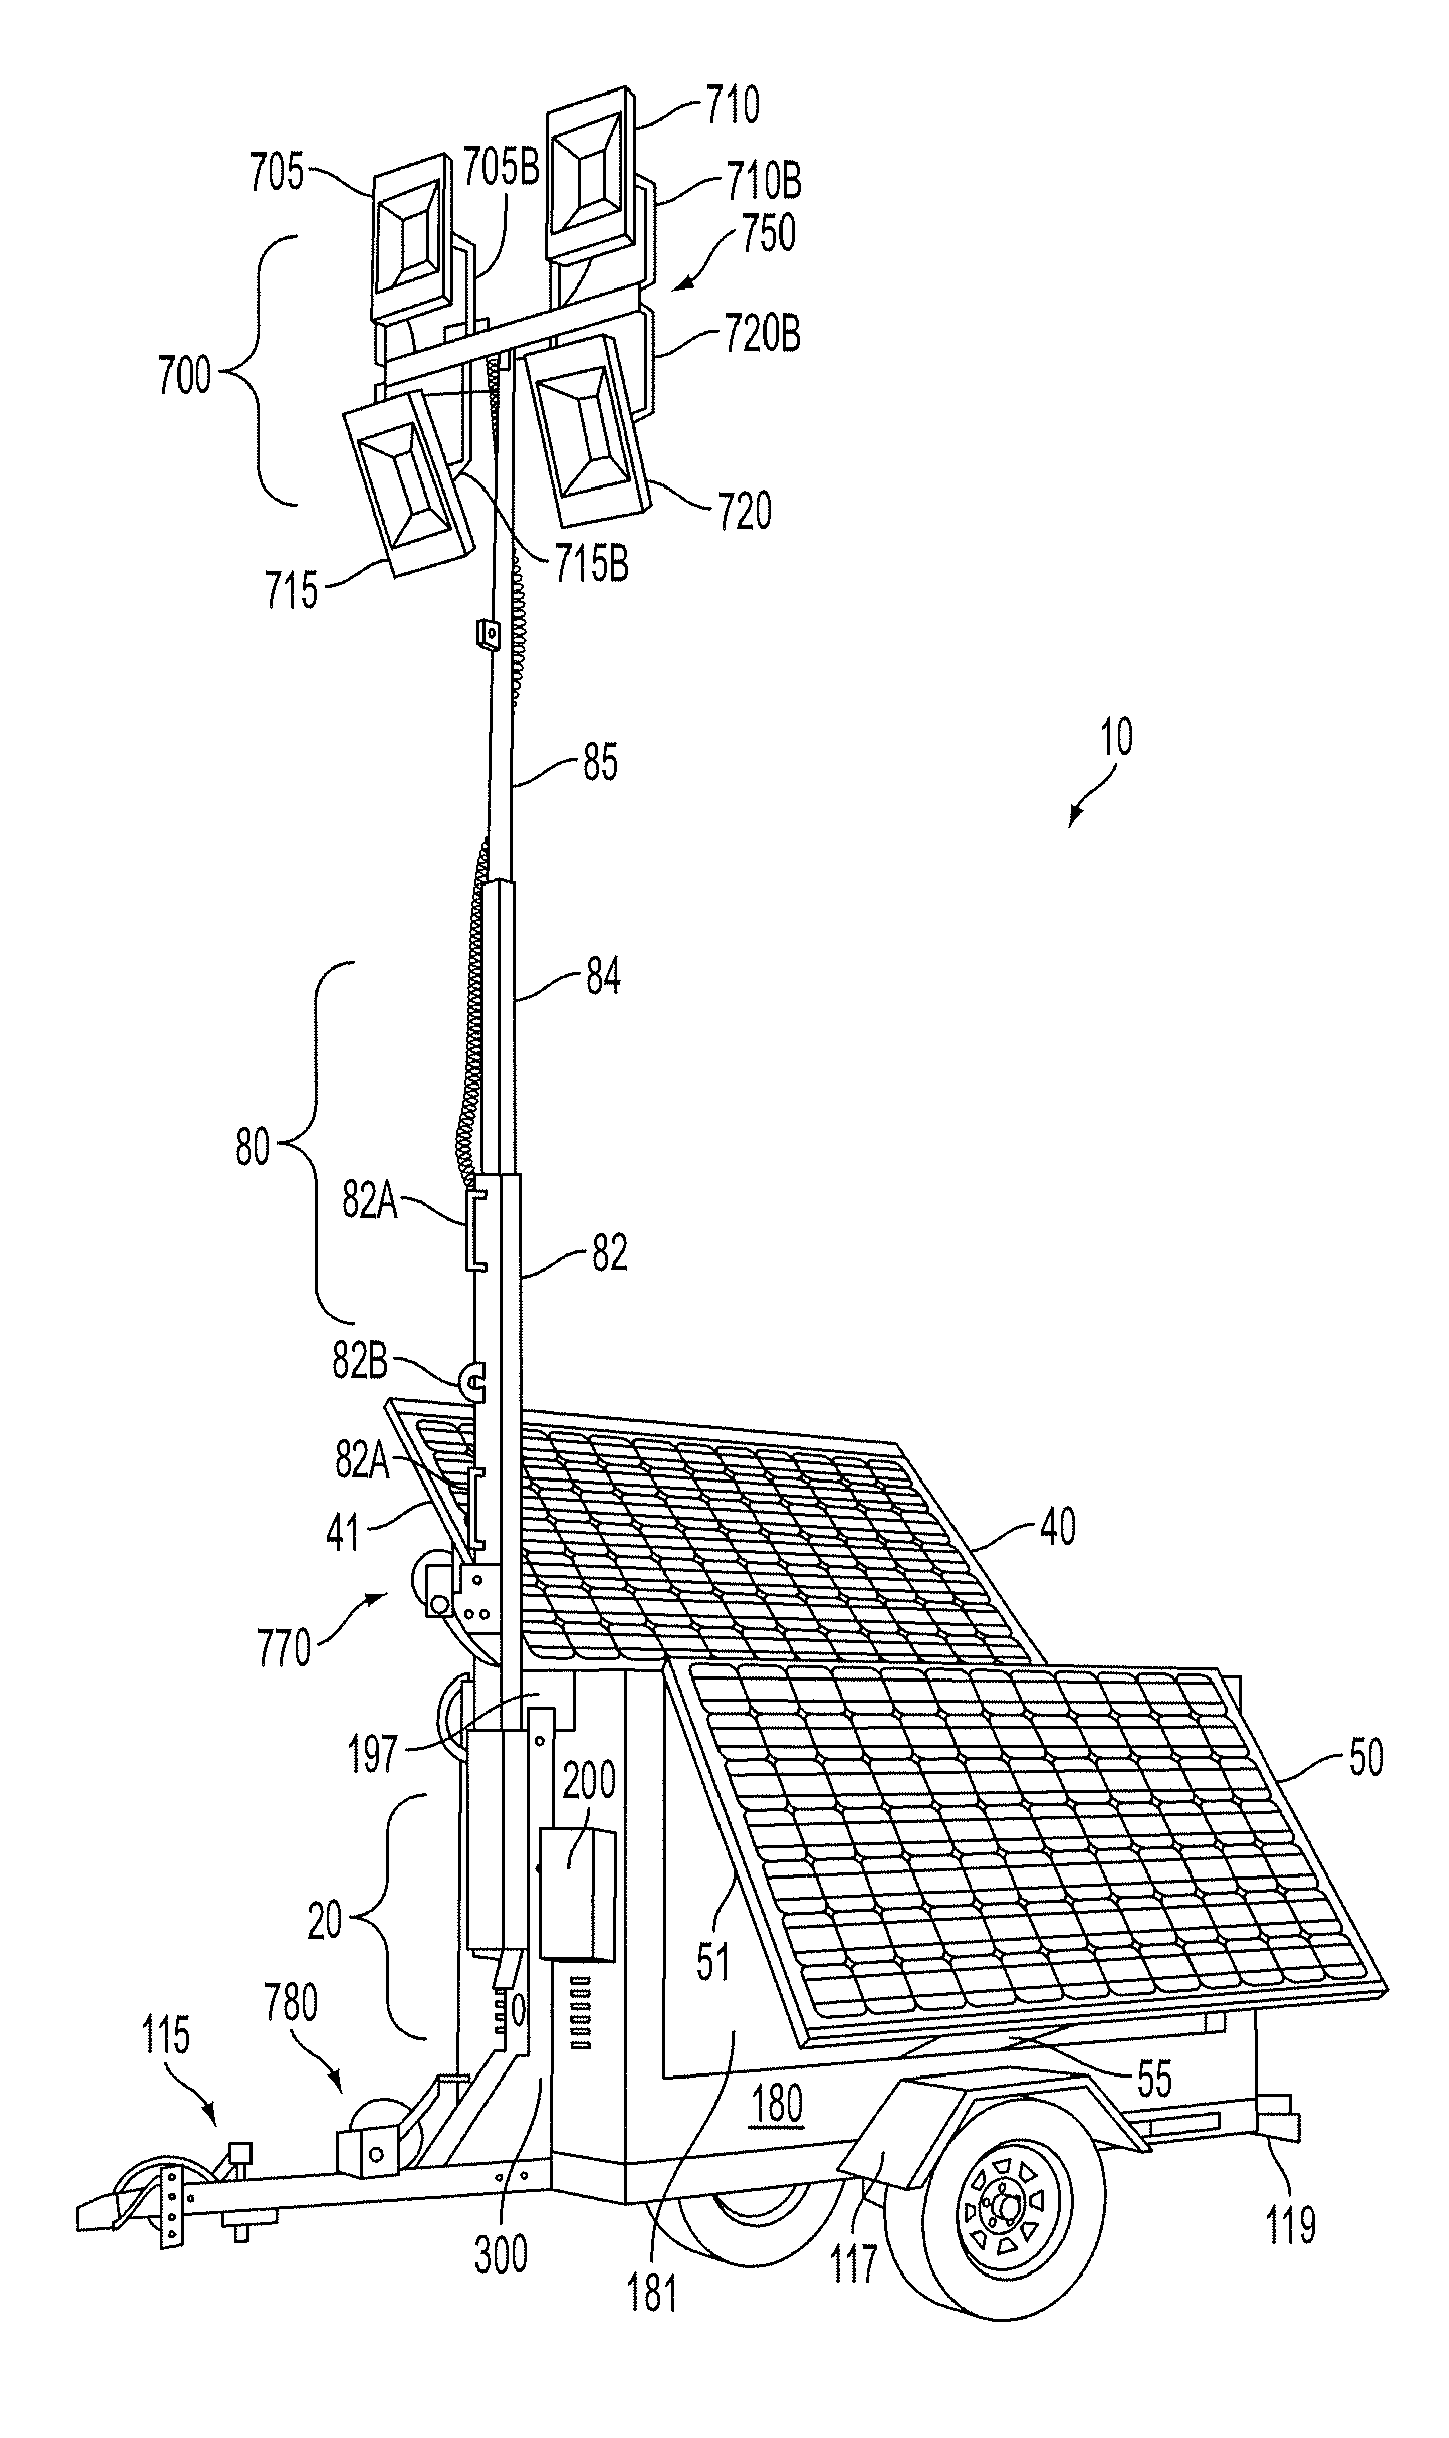 Mobile solar-powered light tower